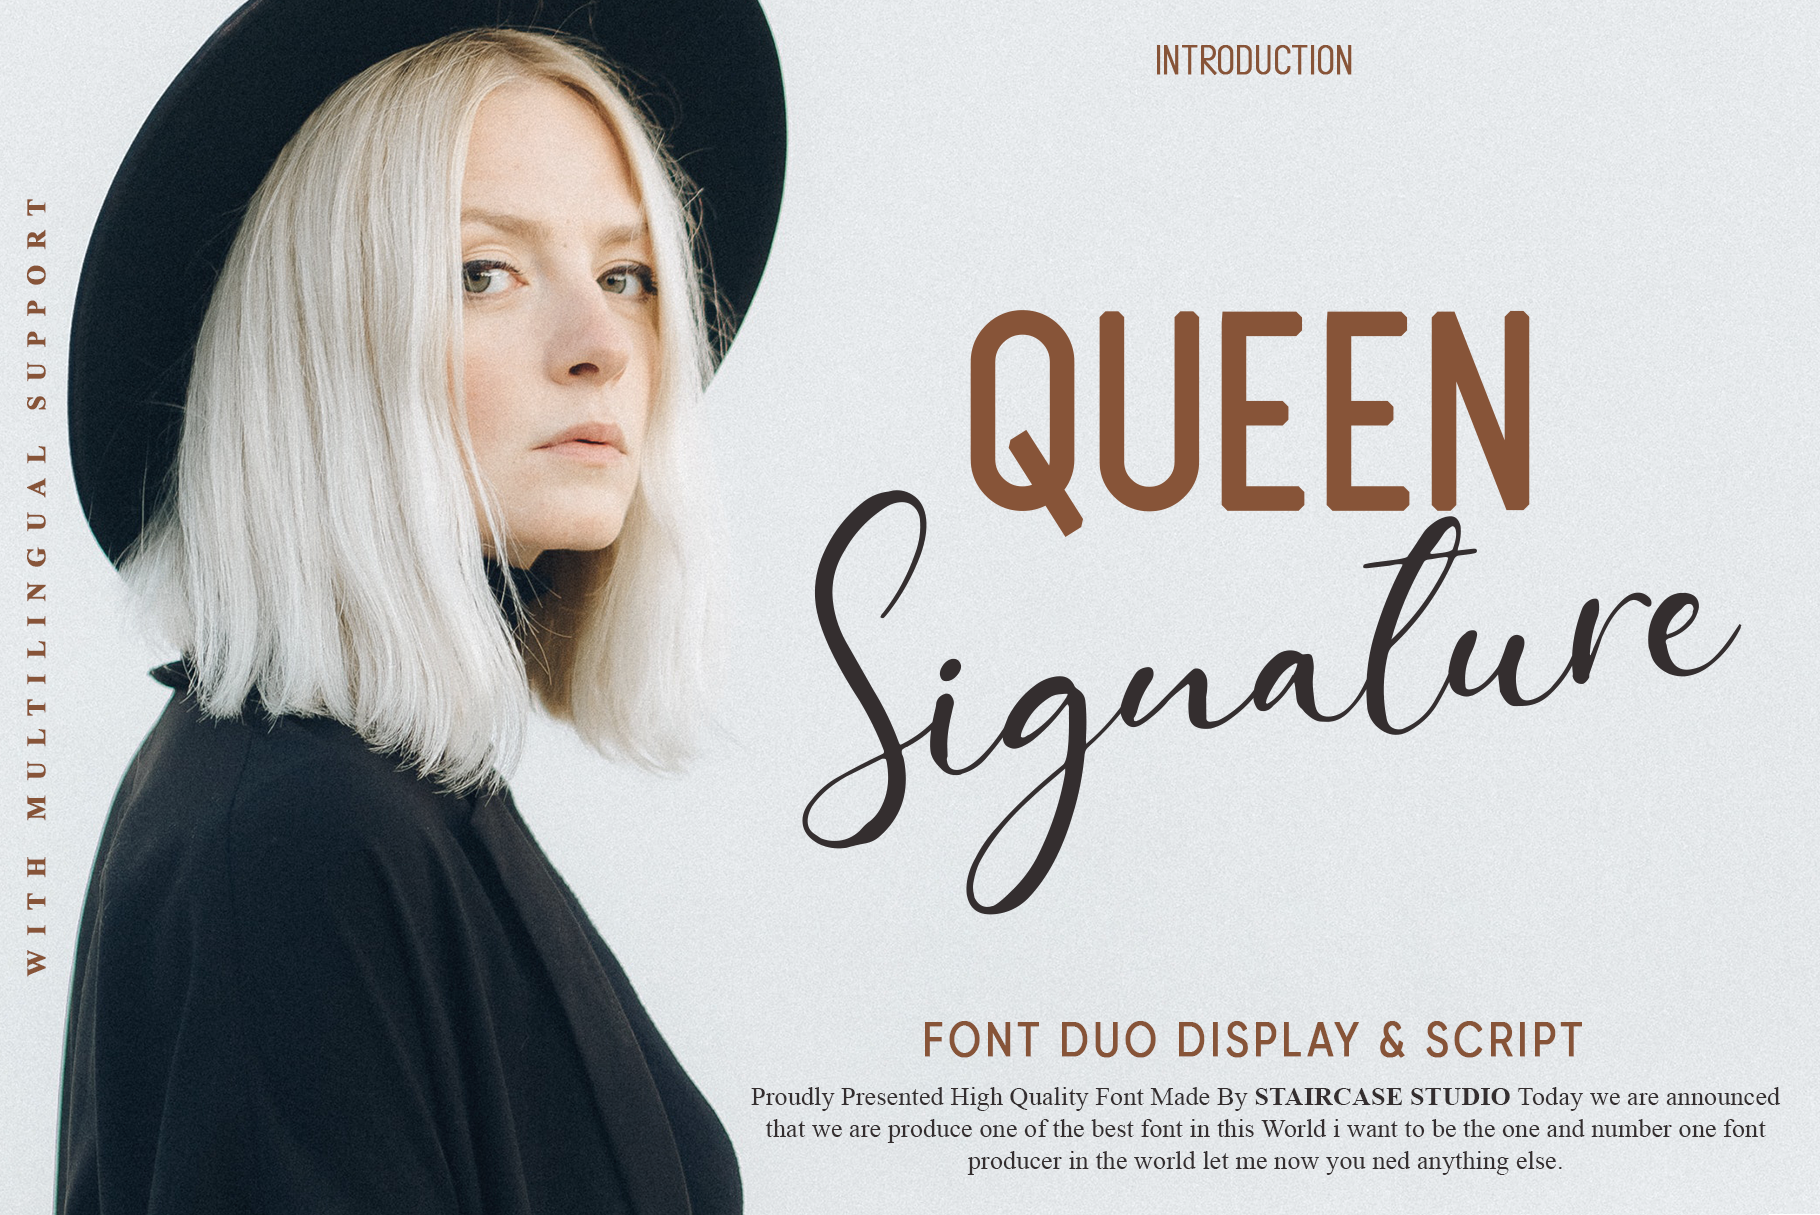 Queen Signature Duo